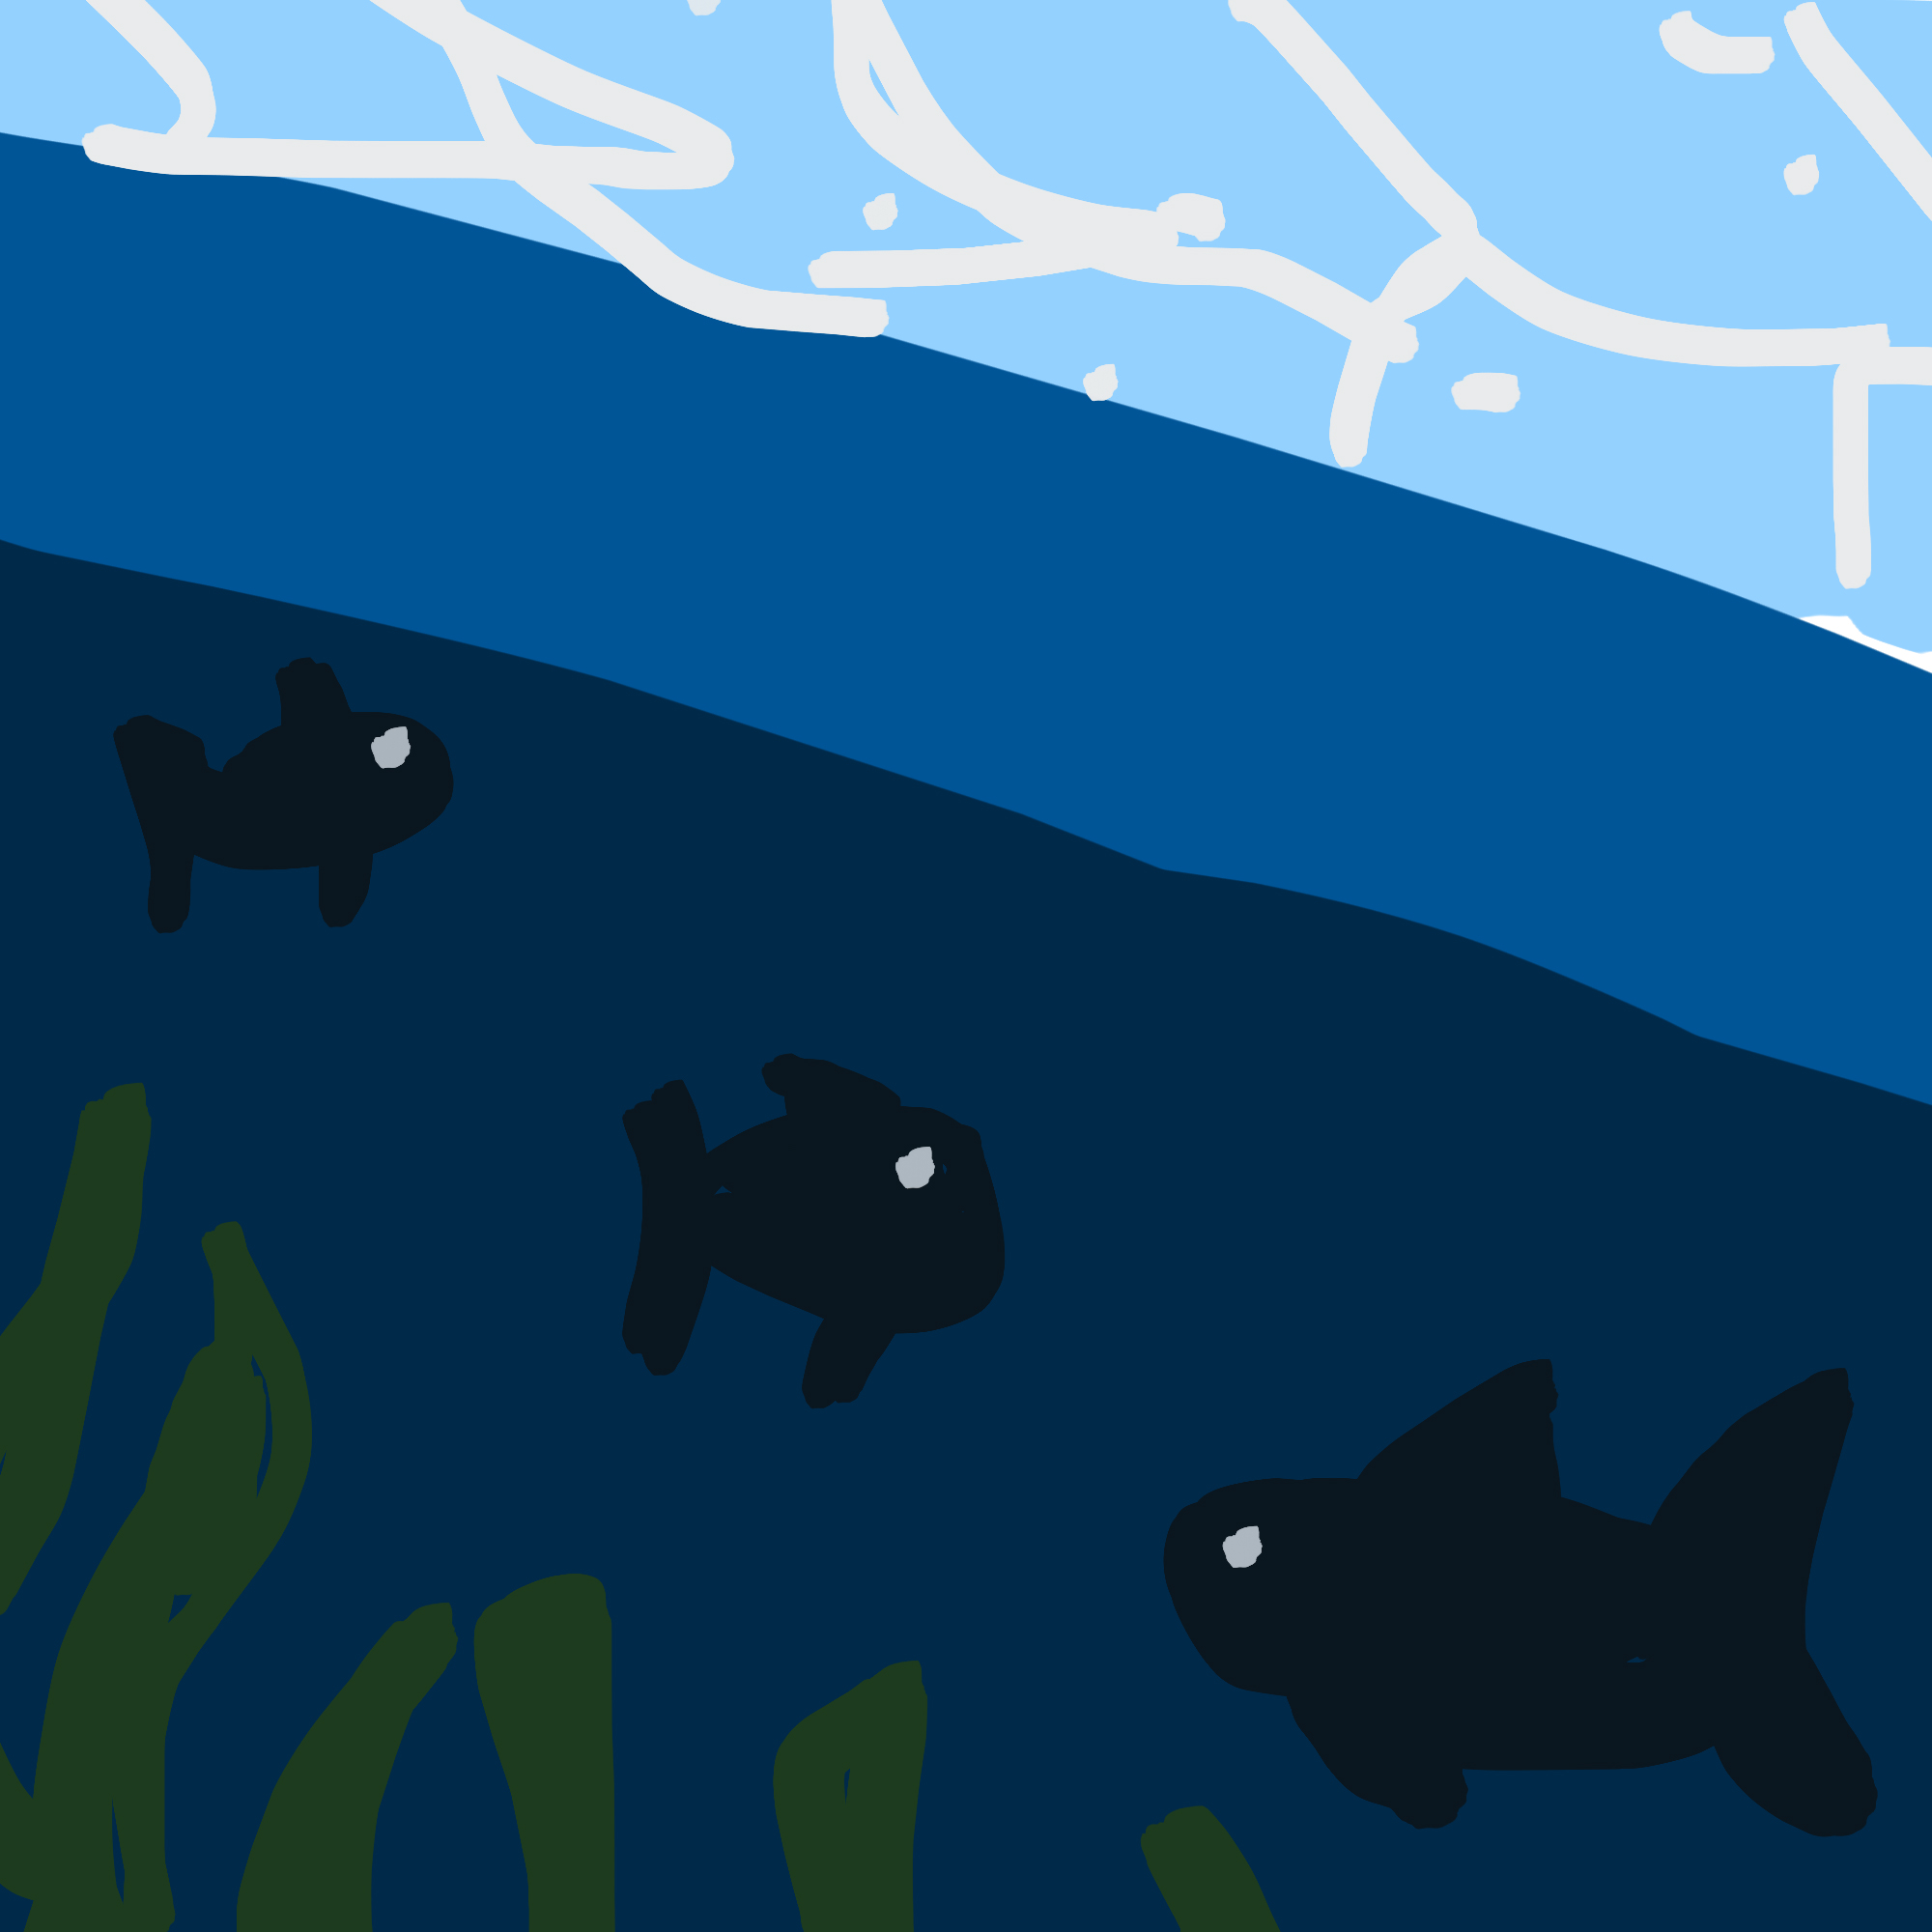 Trois poissons nageant avec élégance sous la surface d'une eau calme, tandis qu'un bouquet d'algues vertes
 flottent ondulent doucement au gré des vagues.